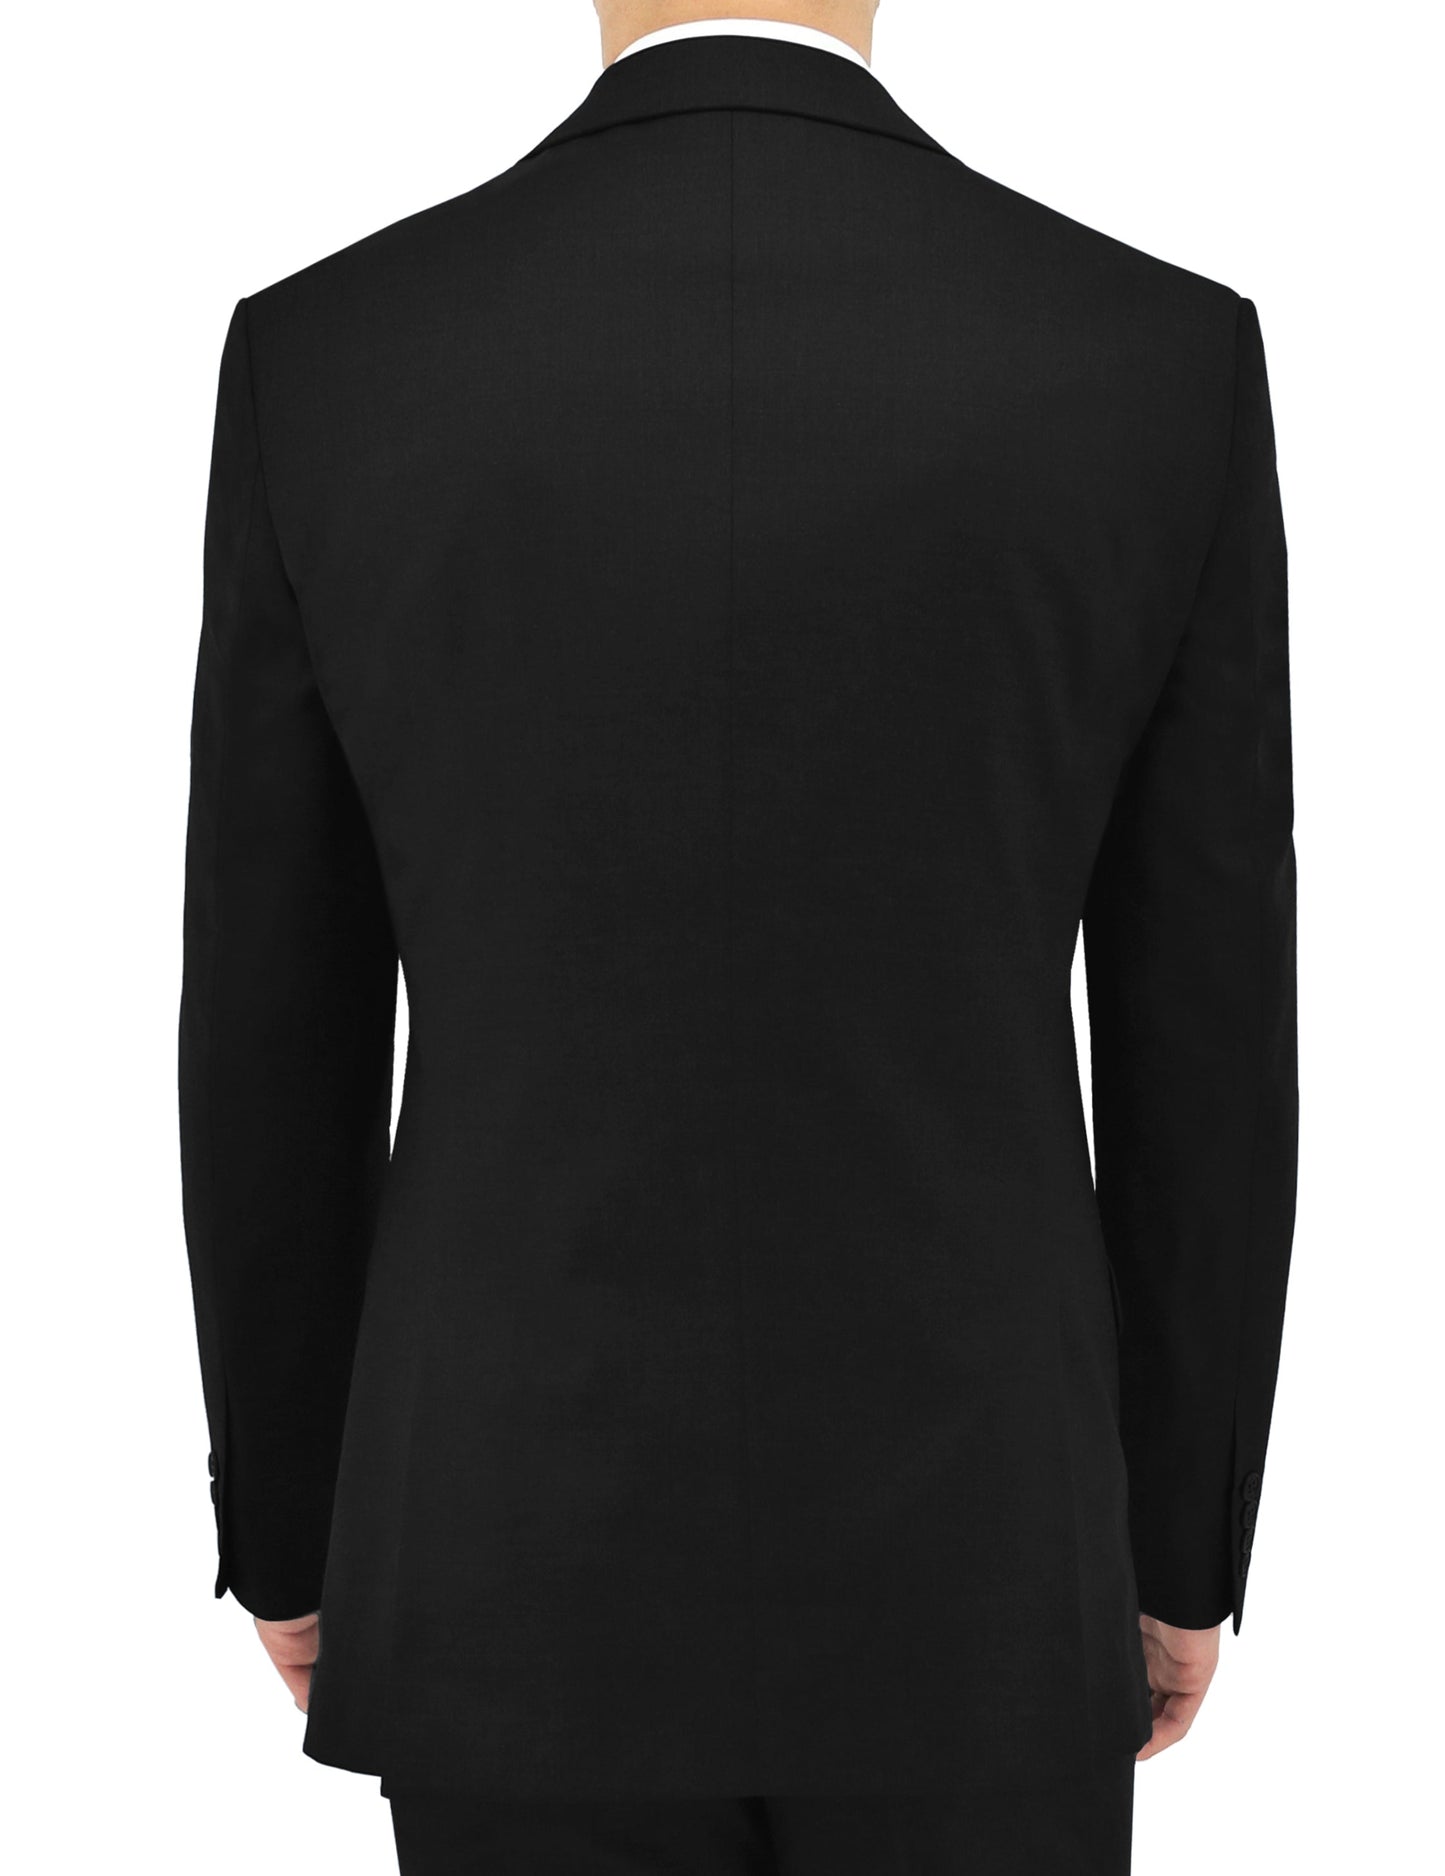 Regent Black Suit Jacket